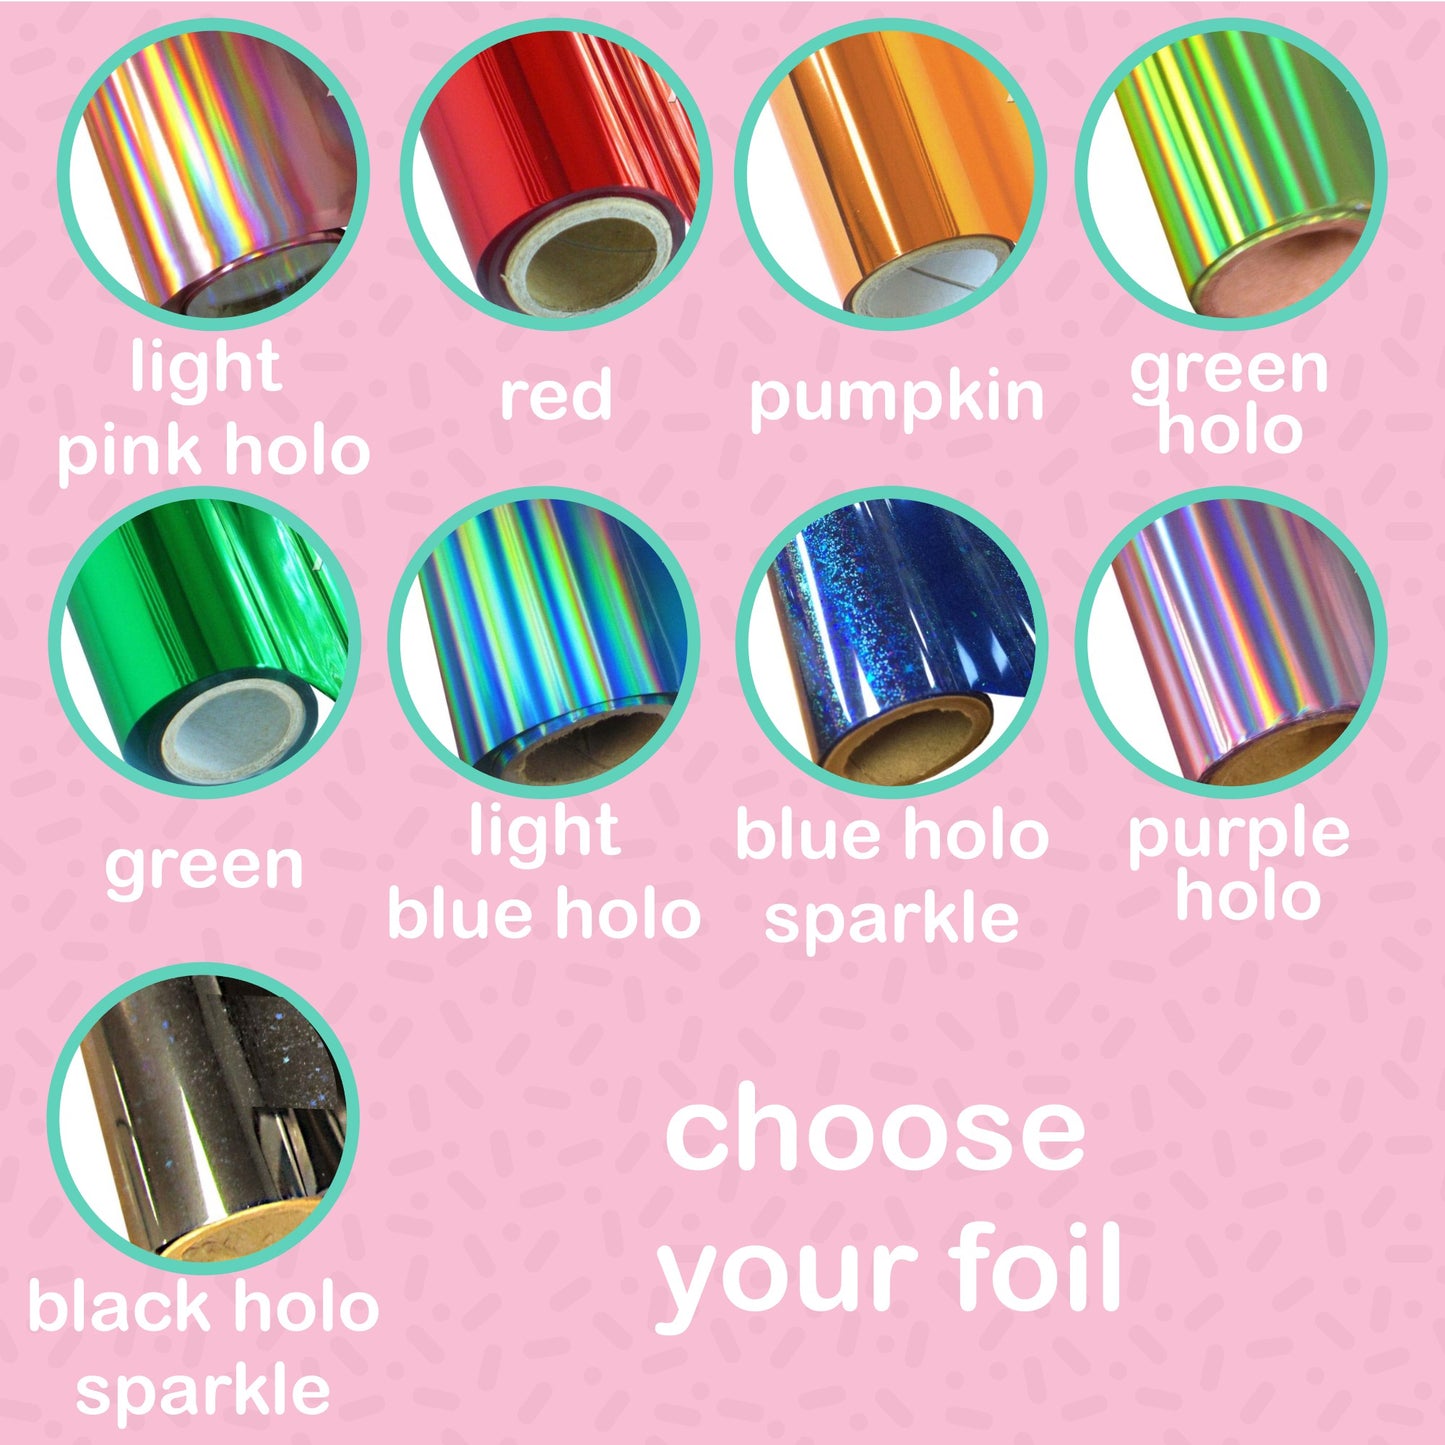 Planet Dividers Foil Stickers - choose your foil - F168